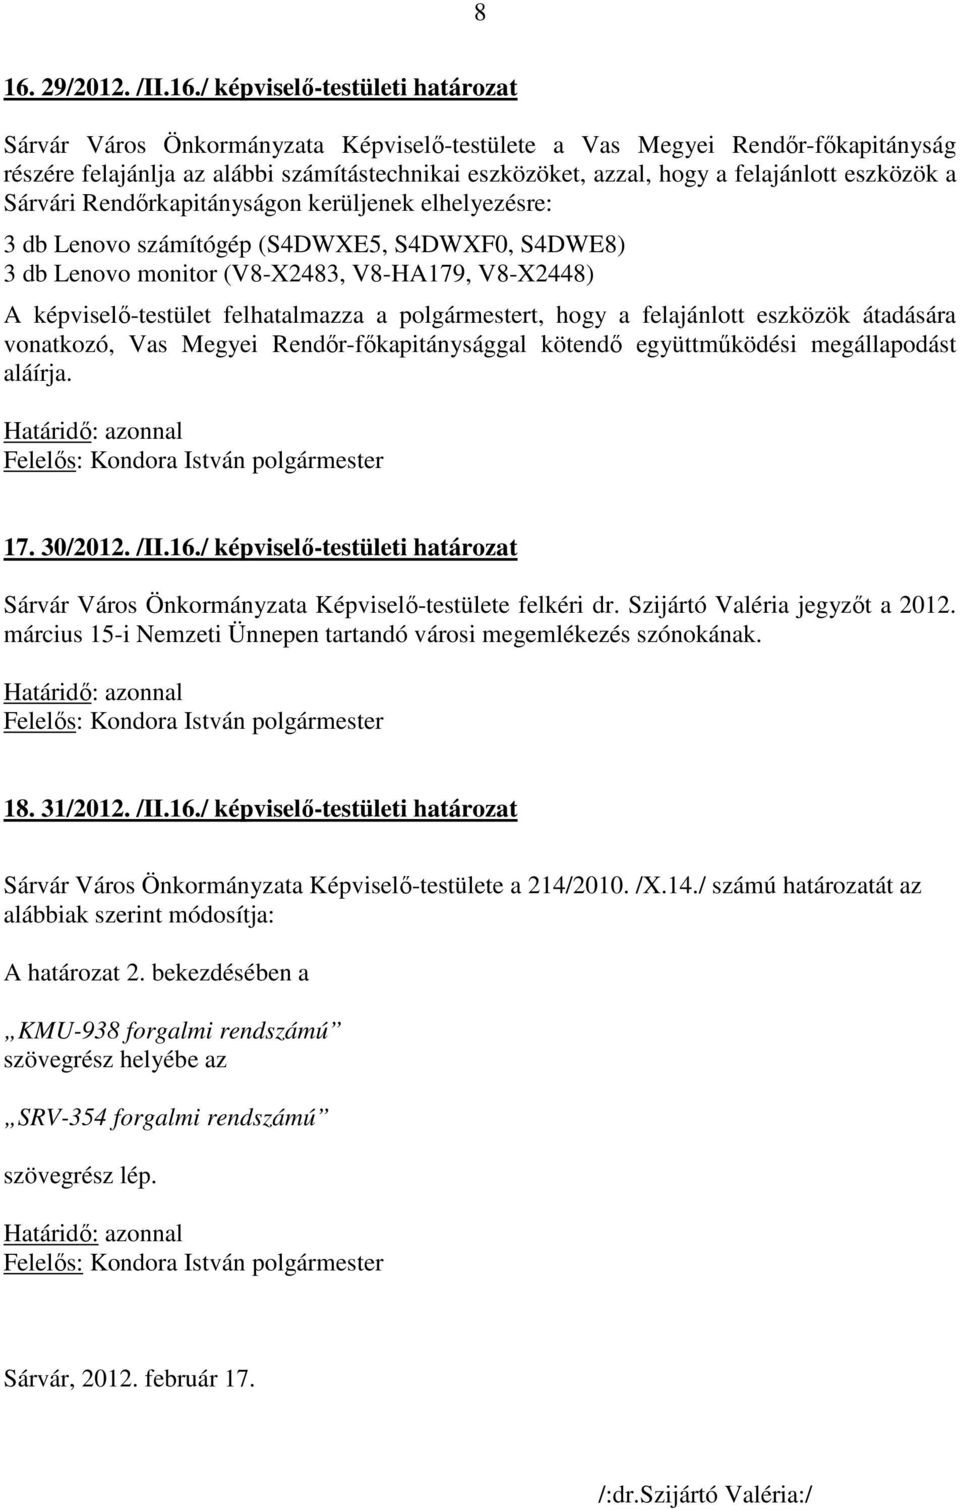 képviselő-testület felhatalmazza a polgármestert, hogy a felajánlott eszközök átadására vonatkozó, Vas Megyei Rendőr-főkapitánysággal kötendő együttműködési megállapodást aláírja. 17. 30/2012. /II.16.